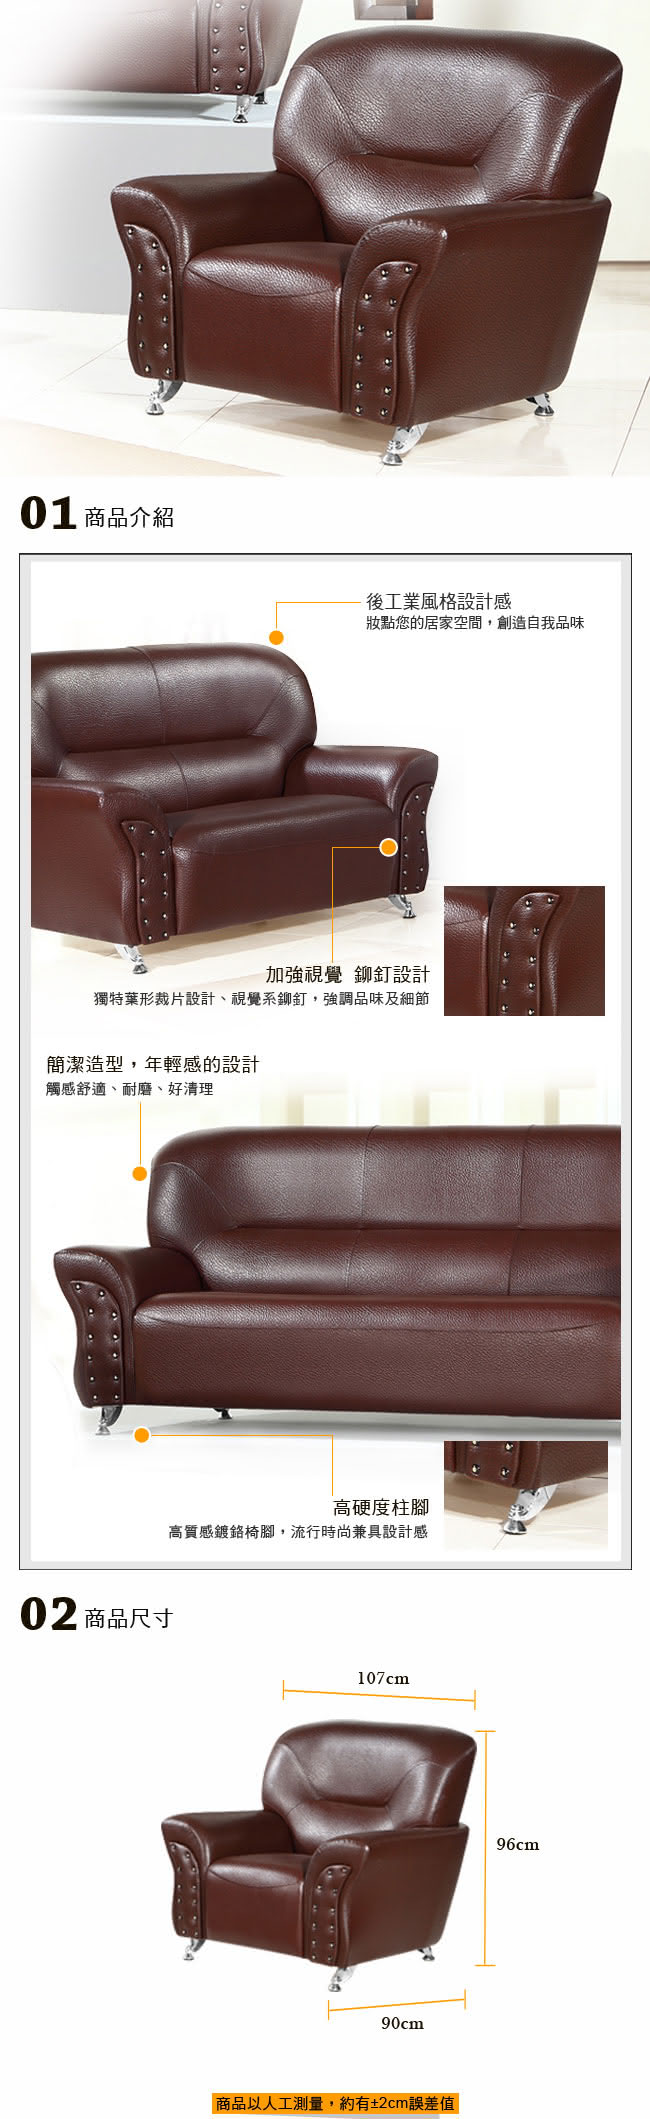 【品生活】後工業風格造型1人沙發(168)